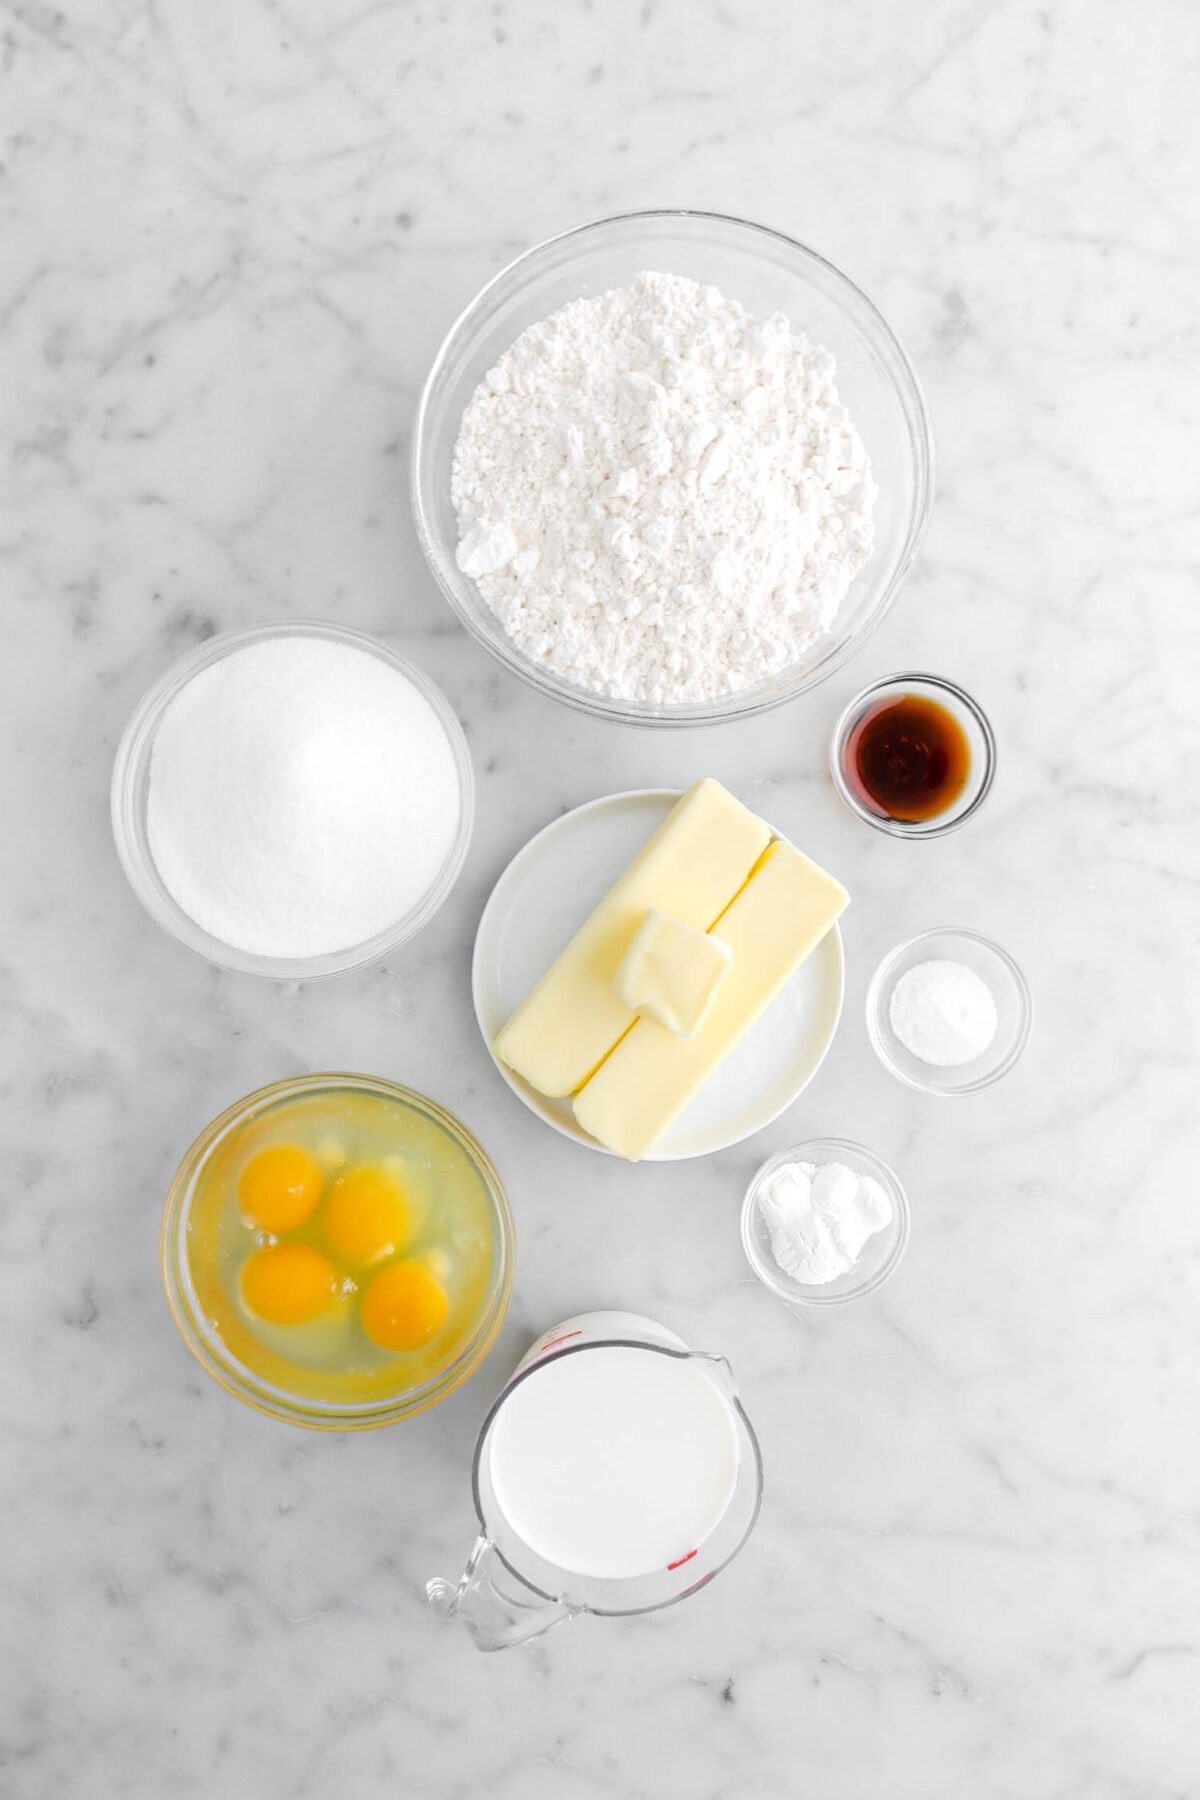 flour, sugar, vanilla, vanilla, salt, baking soda, eggs, and milk on marble surface.